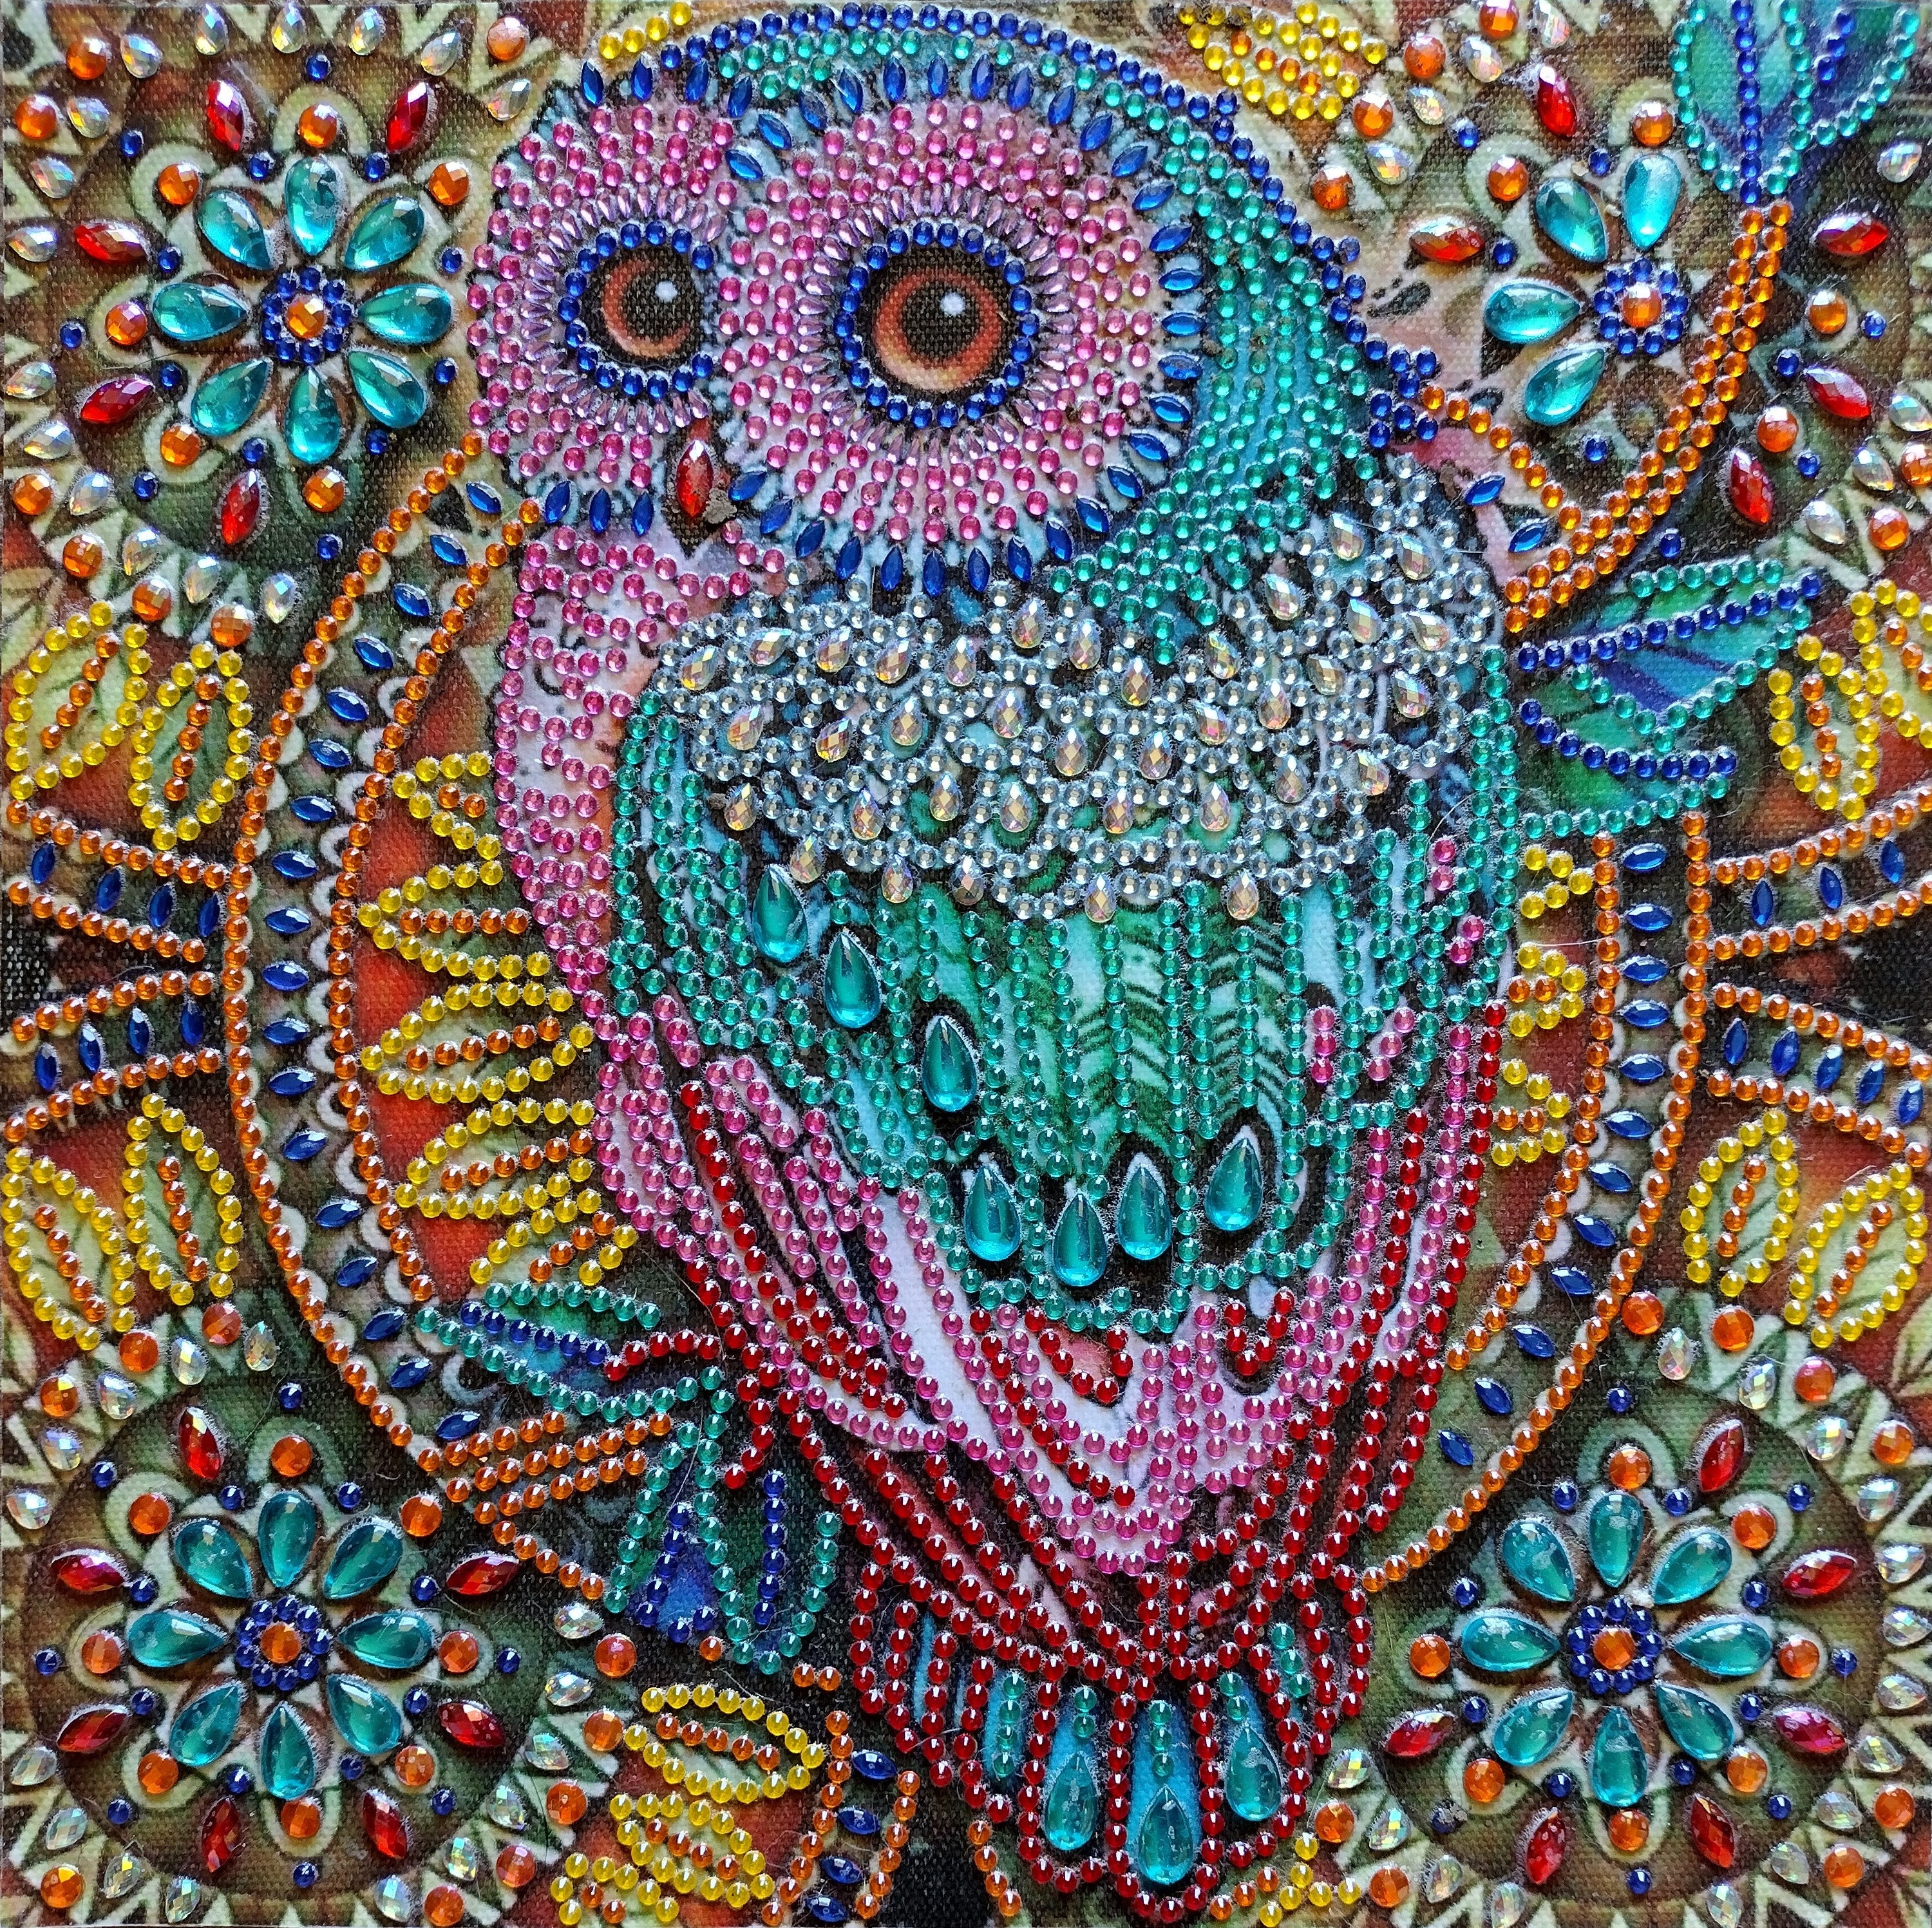 Cute Owl - Diamond Painting Kit – Just Paint with Diamonds